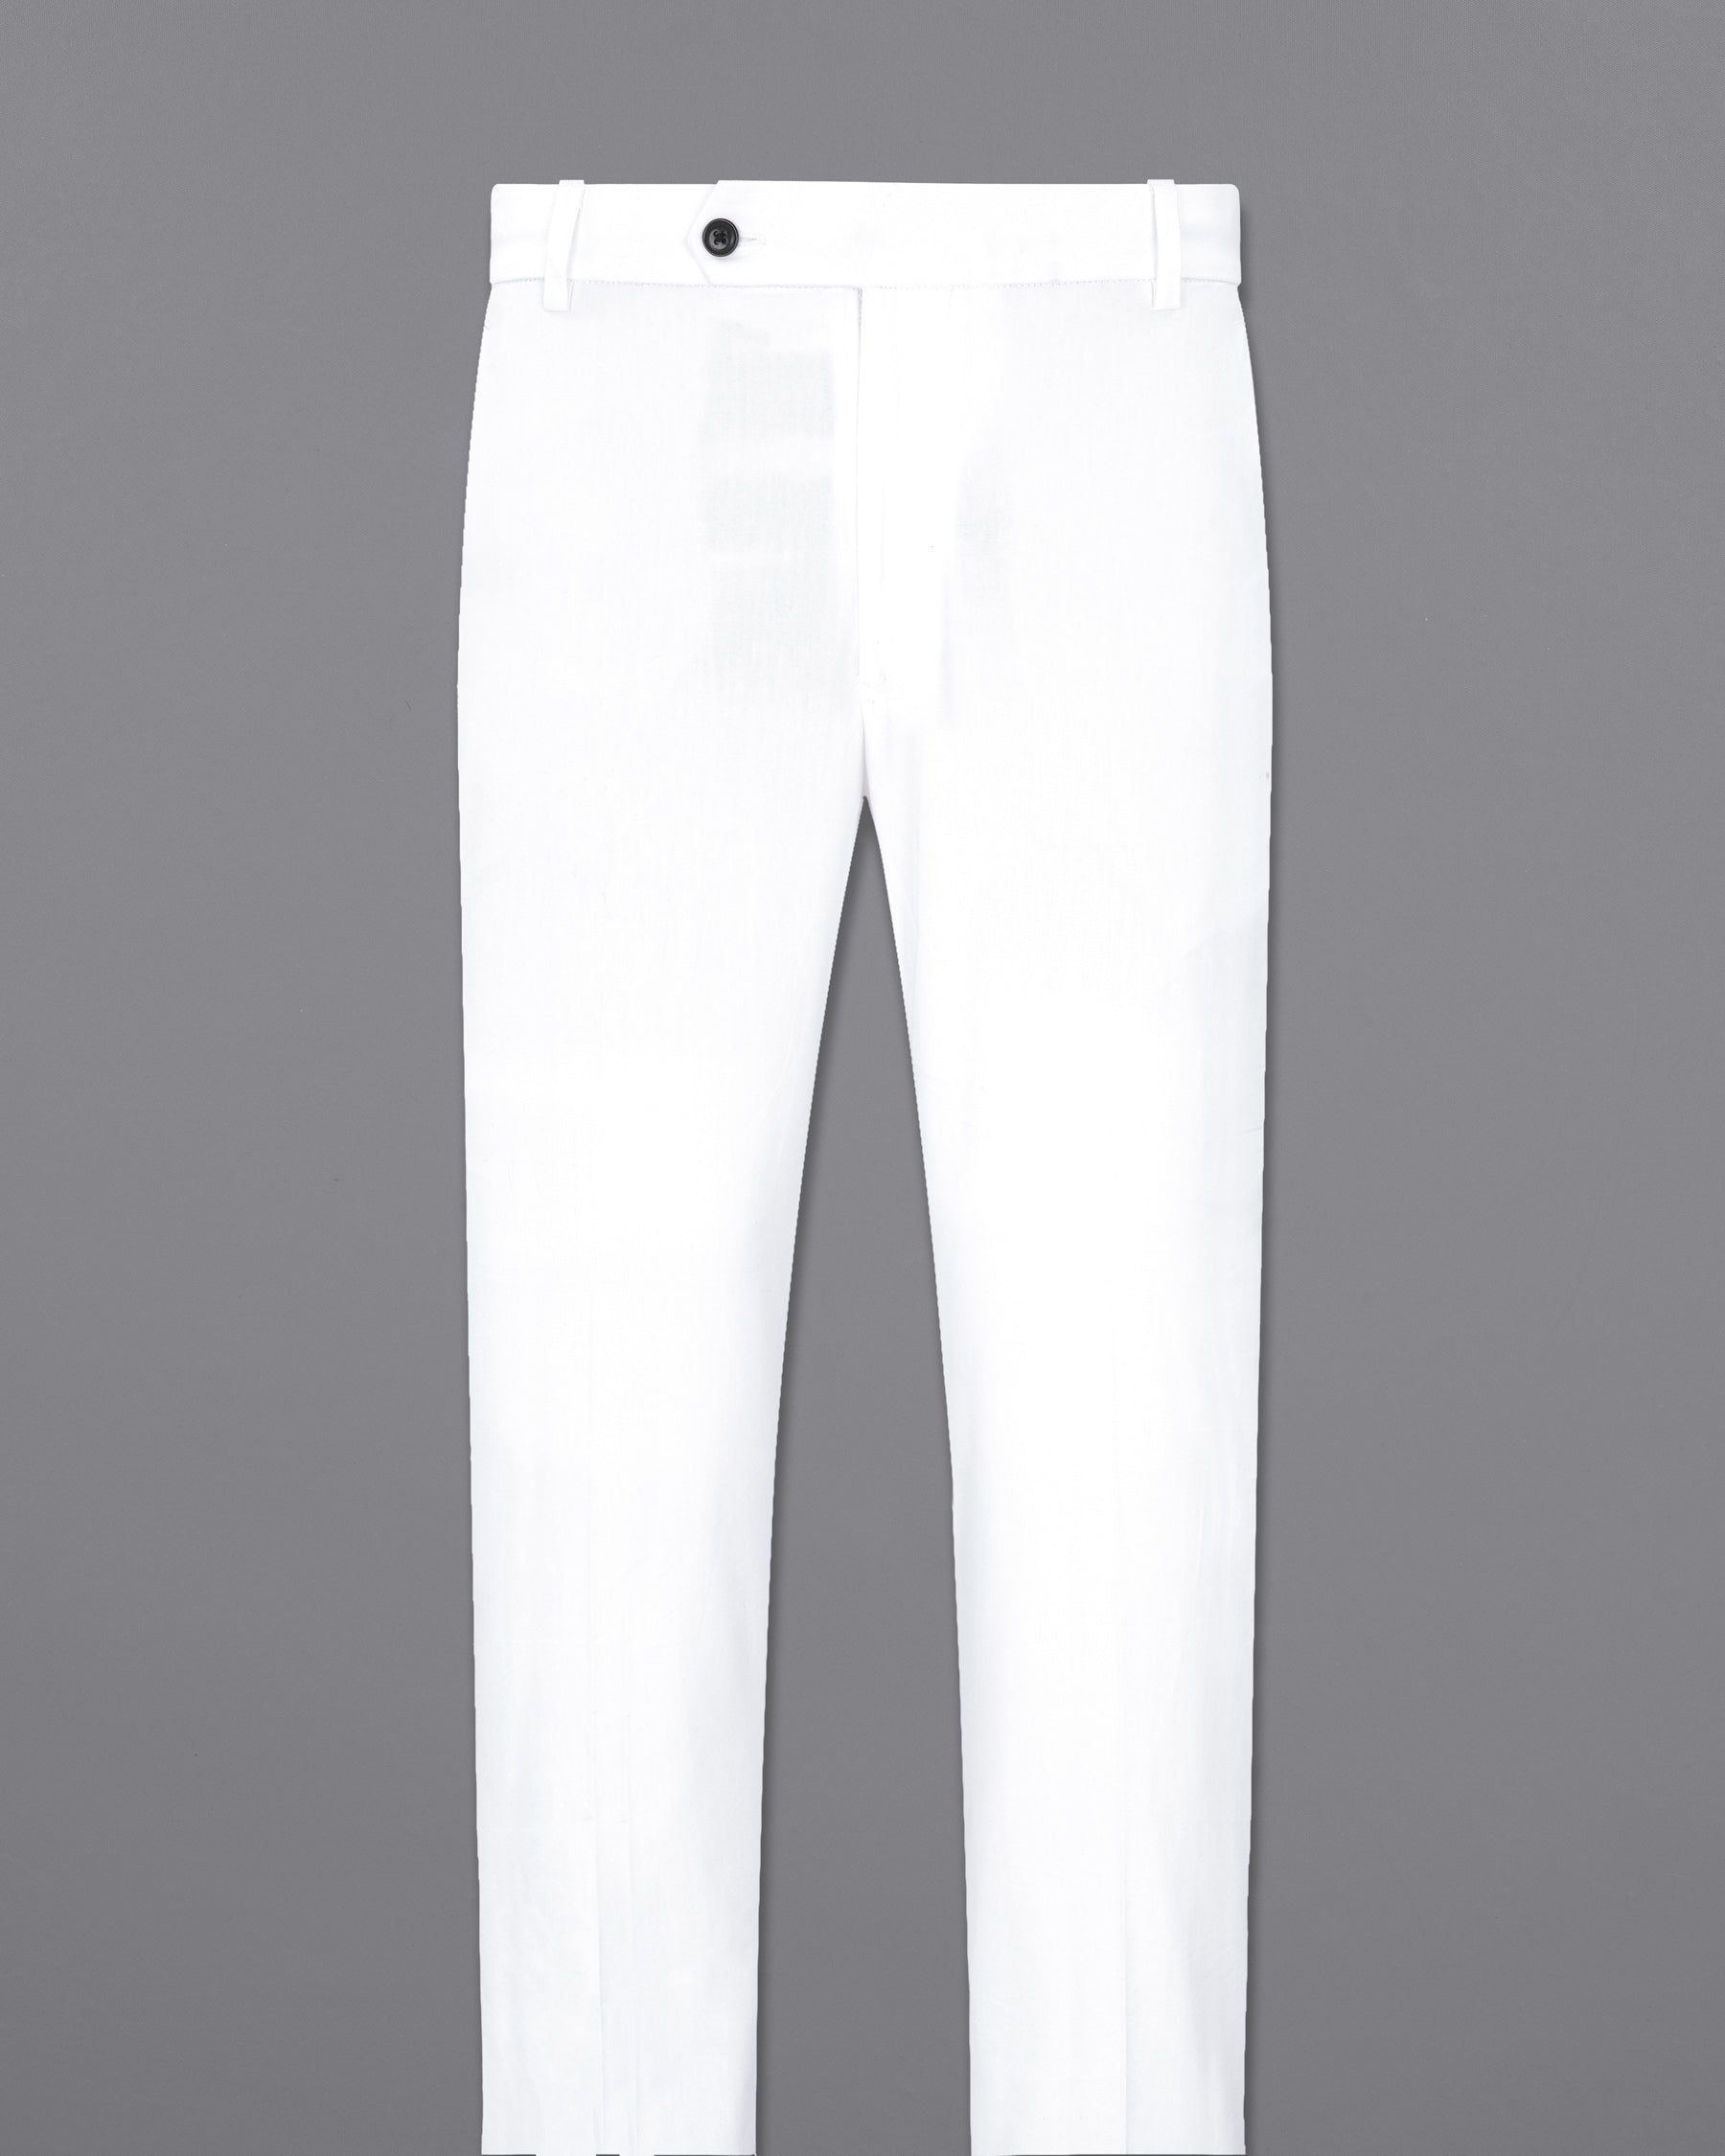 Bright White Cross Buttoned Bandhgala Premium Cotton Designer Suits ST1906-CBG-D44-36, ST1906-CBG-D44-38, ST1906-CBG-D44-40, ST1906-CBG-D44-42, ST1906-CBG-D44-44, ST1906-CBG-D44-46, ST1906-CBG-D44-48, ST1906-CBG-D44-50, ST1906-CBG-D44-52, ST1906-CBG-D44-54, ST1906-CBG-D44-56, ST1906-CBG-D44-58, ST1906-CBG-D44-60